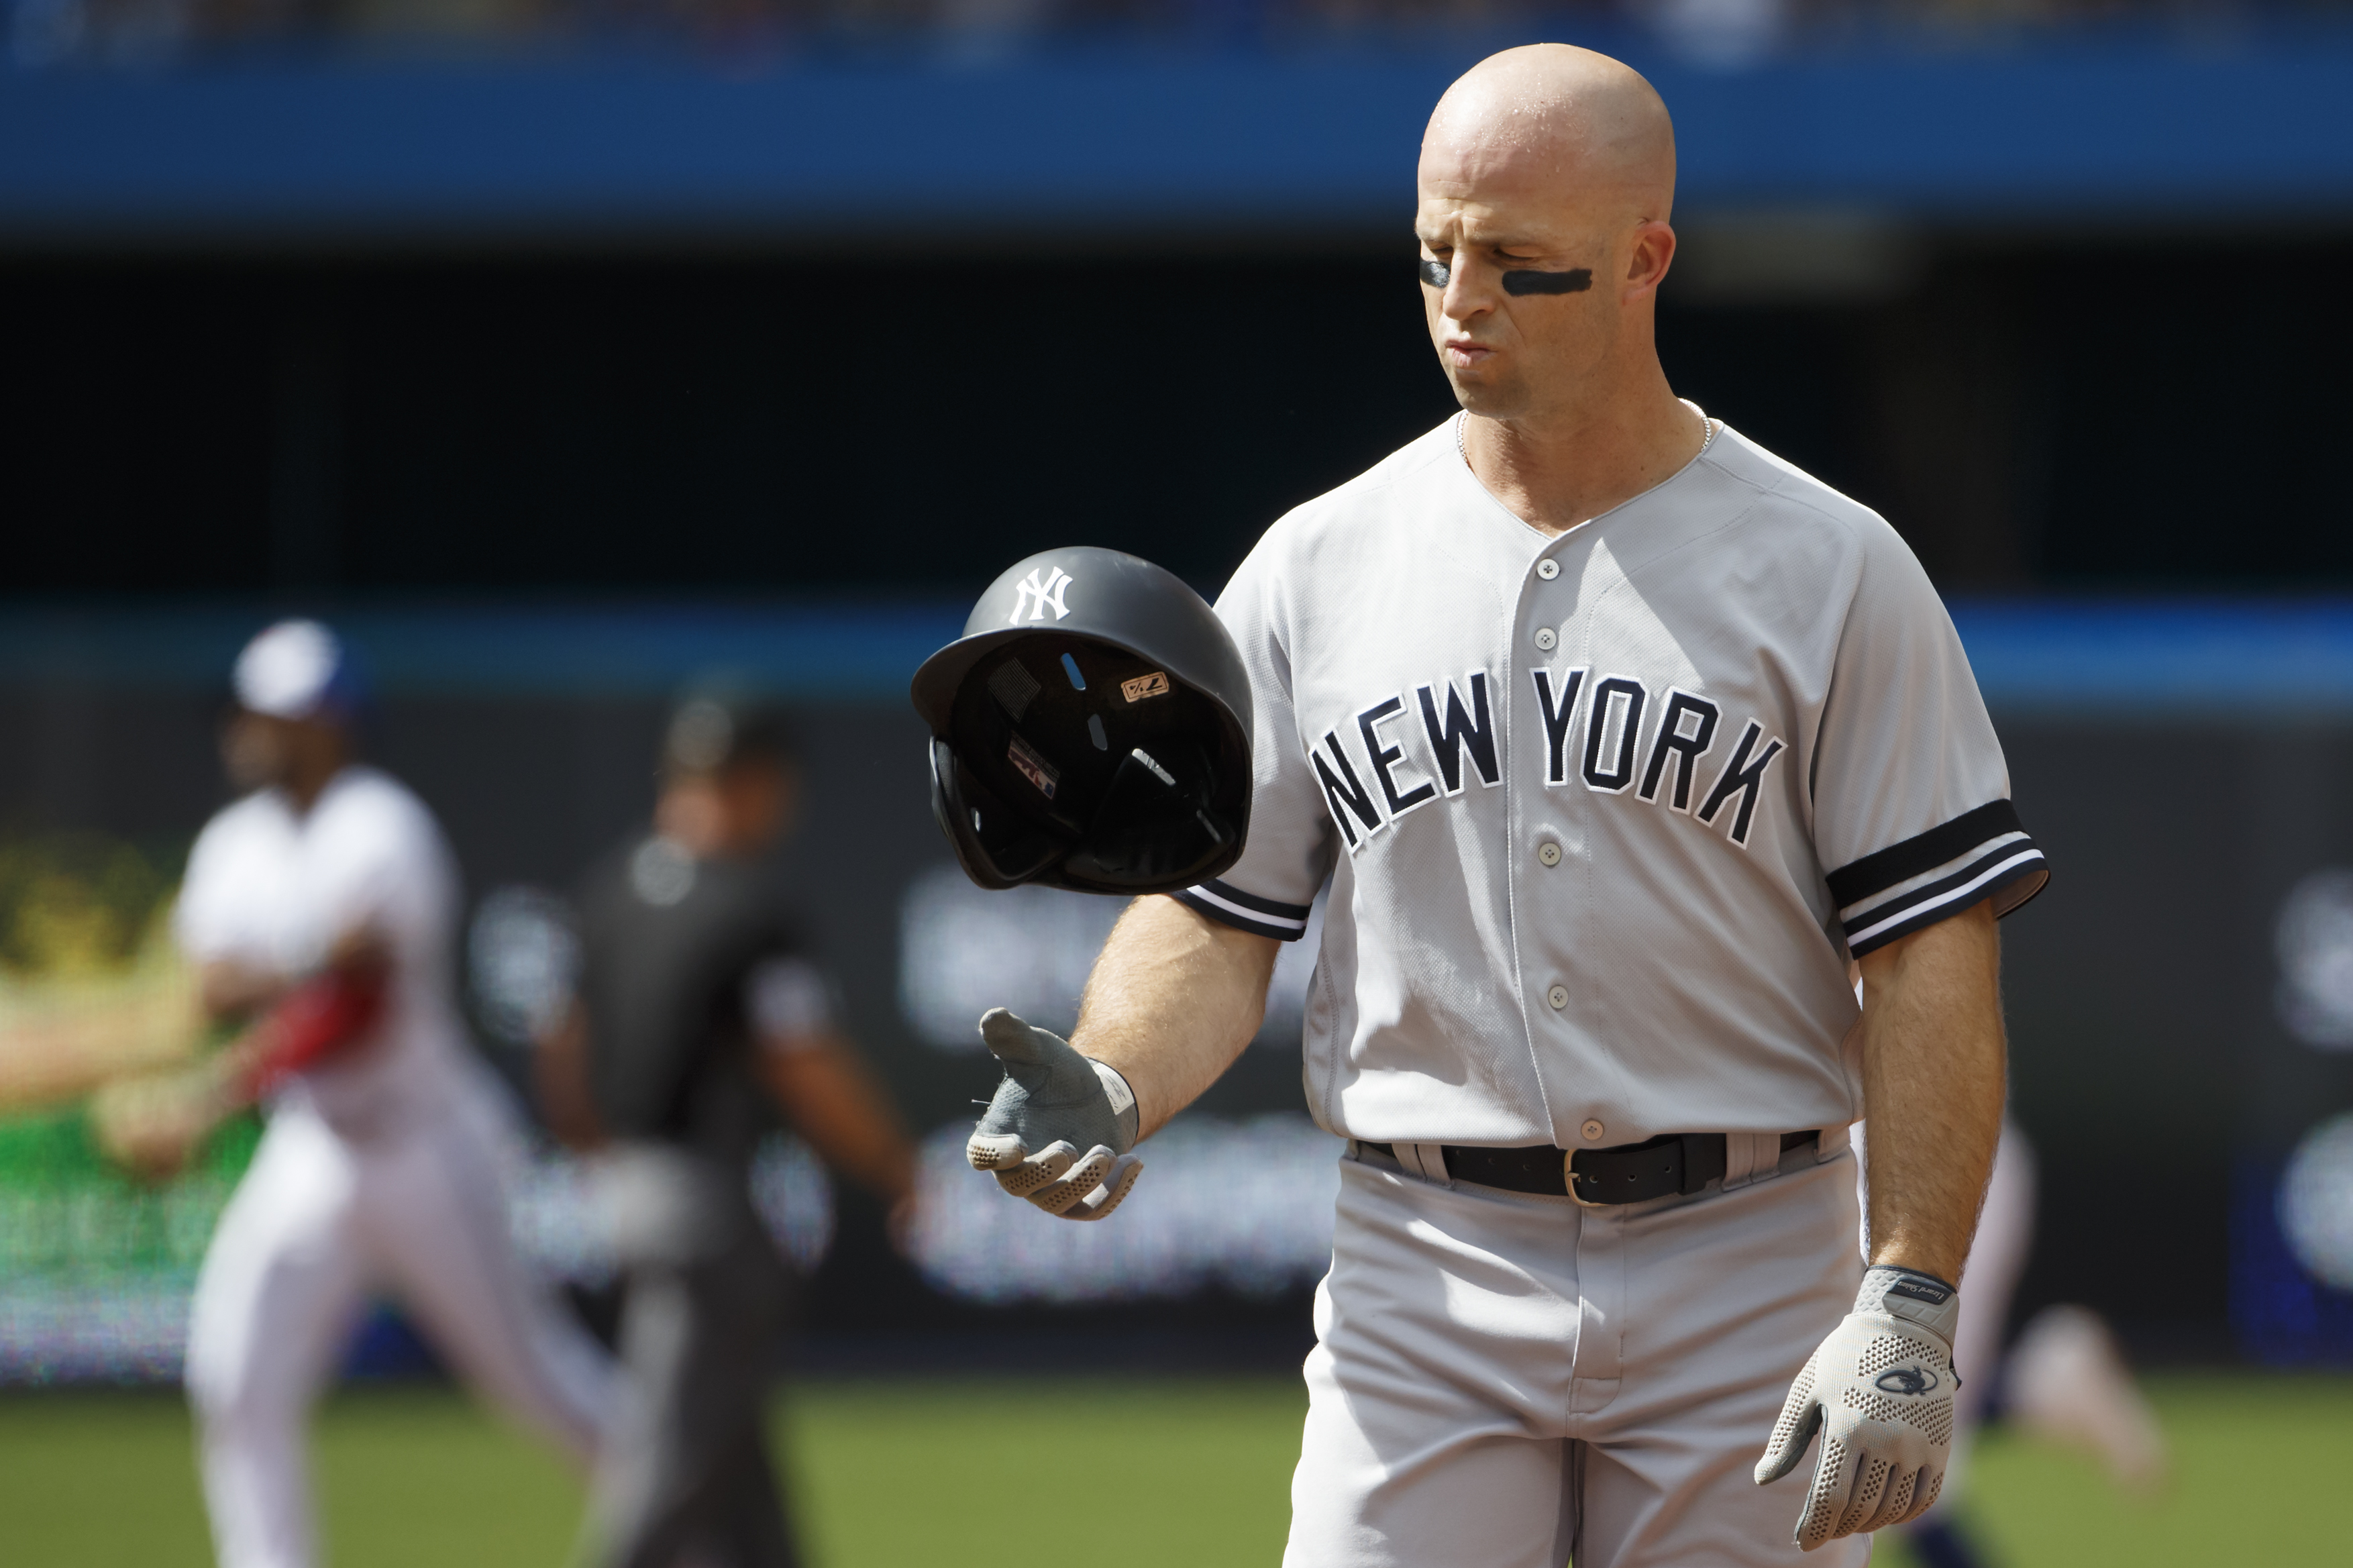 Yankees: Brett Gardner accidentally hurts himself throwing helmet